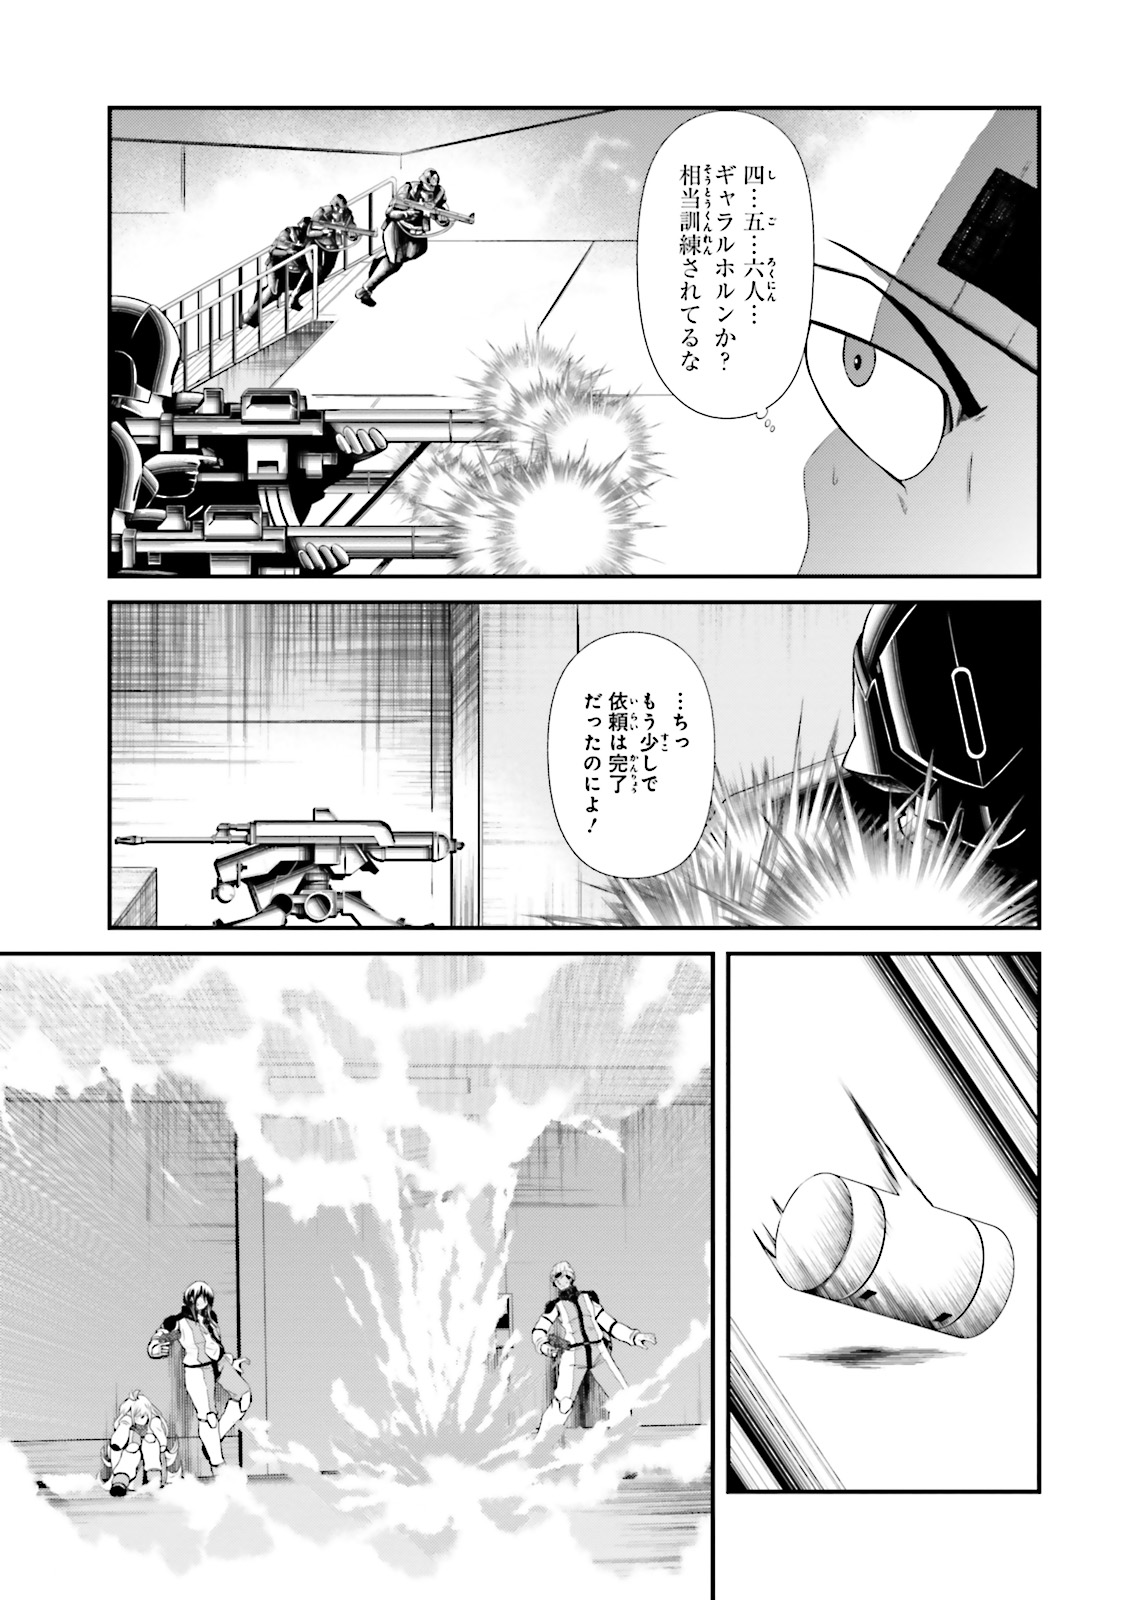 機動戦士ガンダム 鉄血のオルフェンズ月鋼 第11話 - Page 5